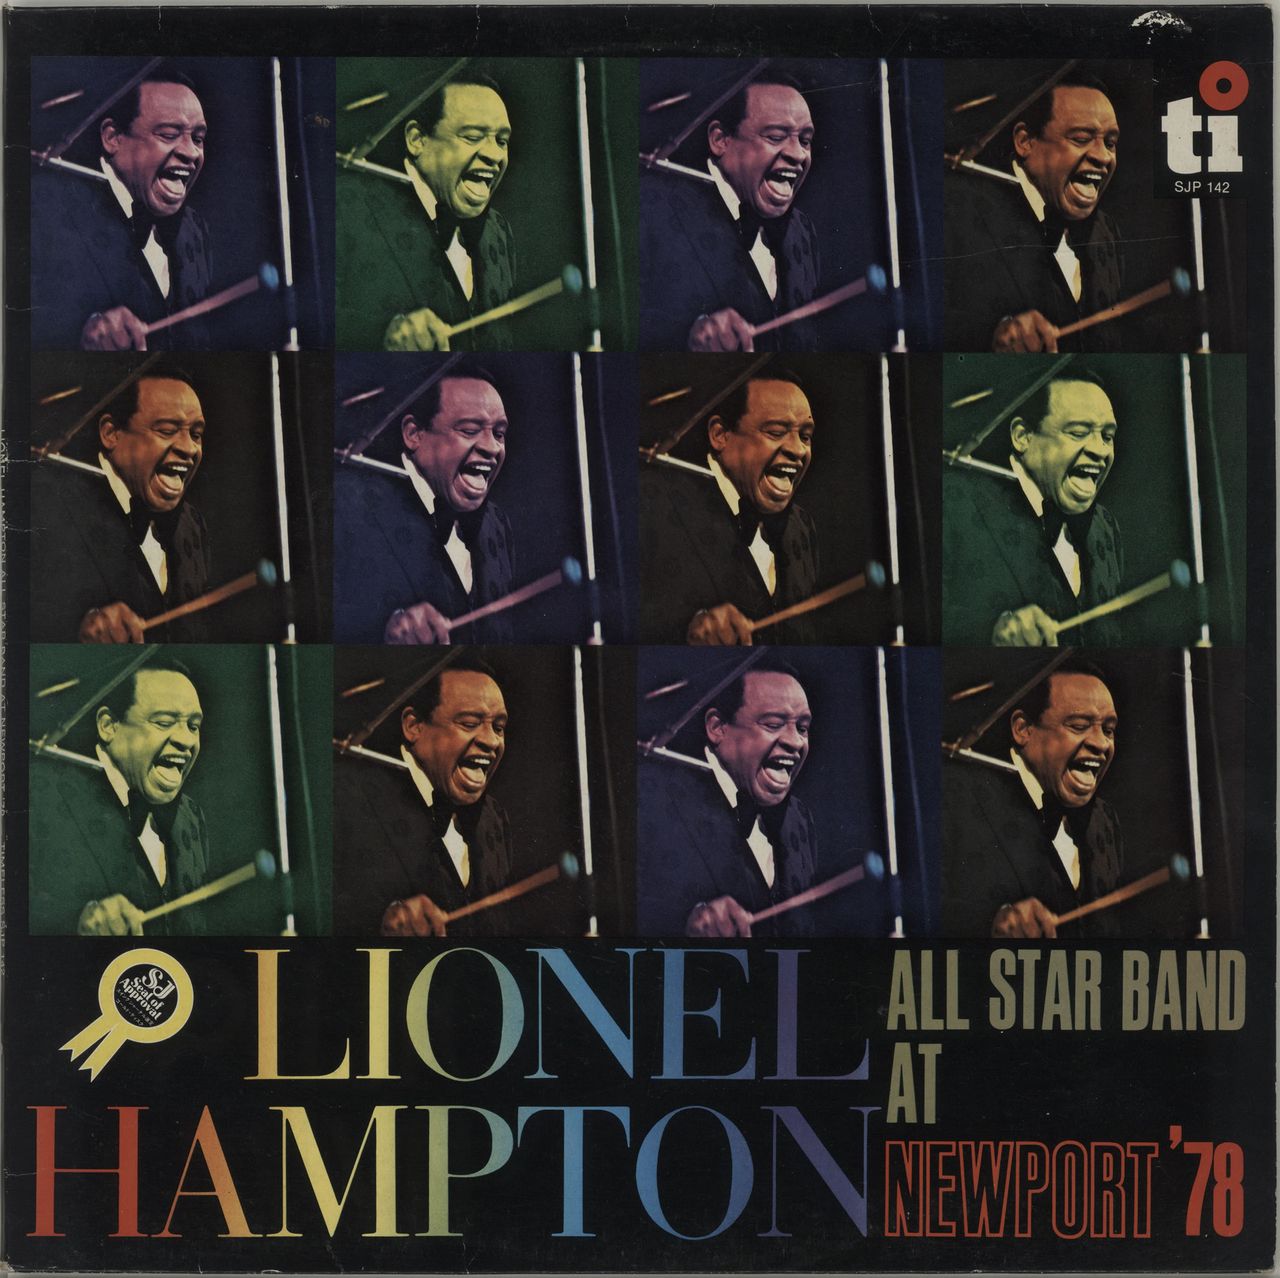 Lionel Hampton At Newport '78 US vinyl LP album (LP record) SJP142